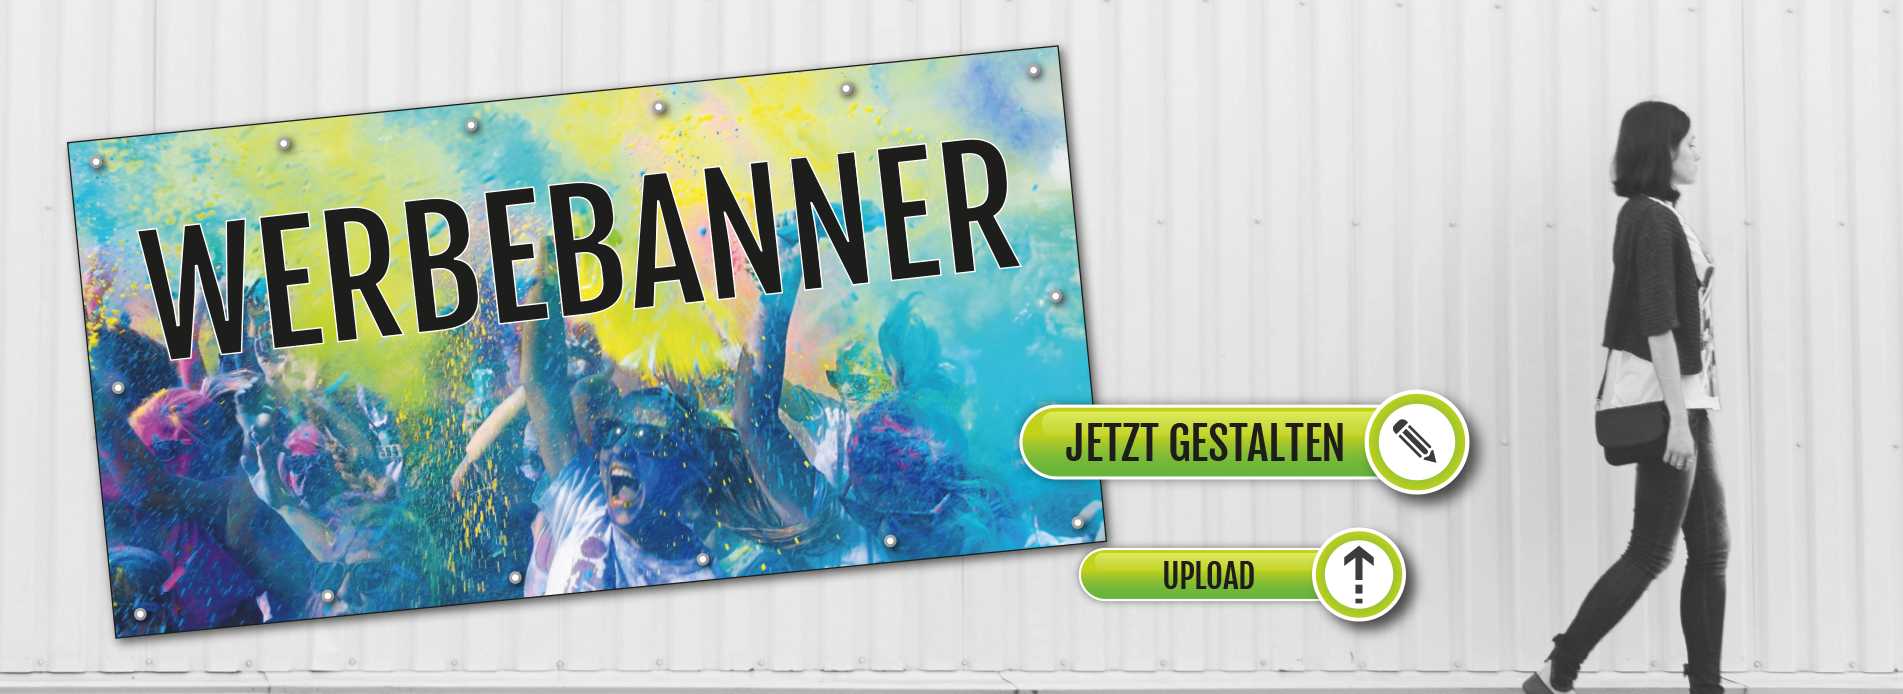 PVC-Banner Werbetransparent - Bestpreis - Online Gestalten - Kostenlose Lieferung